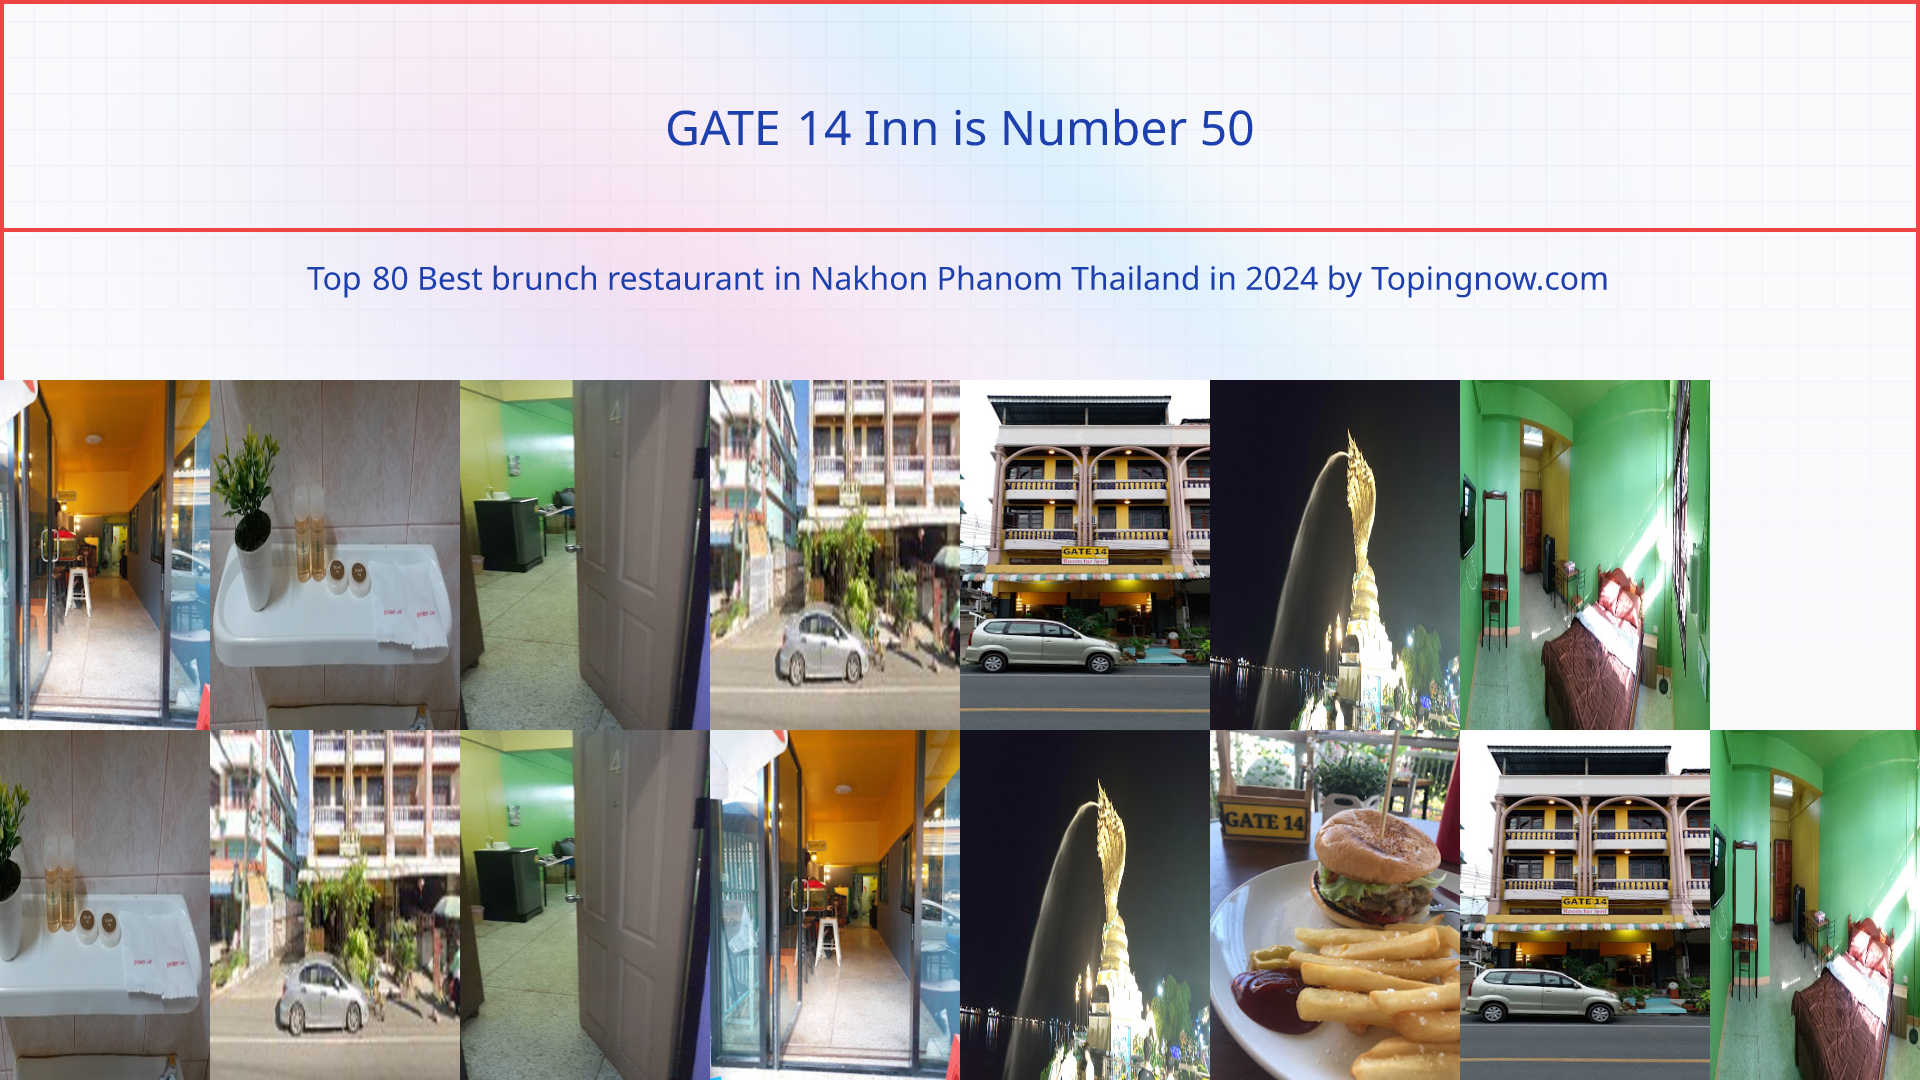 GATE 14 Inn: Top 80 Best brunch restaurant in Nakhon Phanom Thailand in 2024